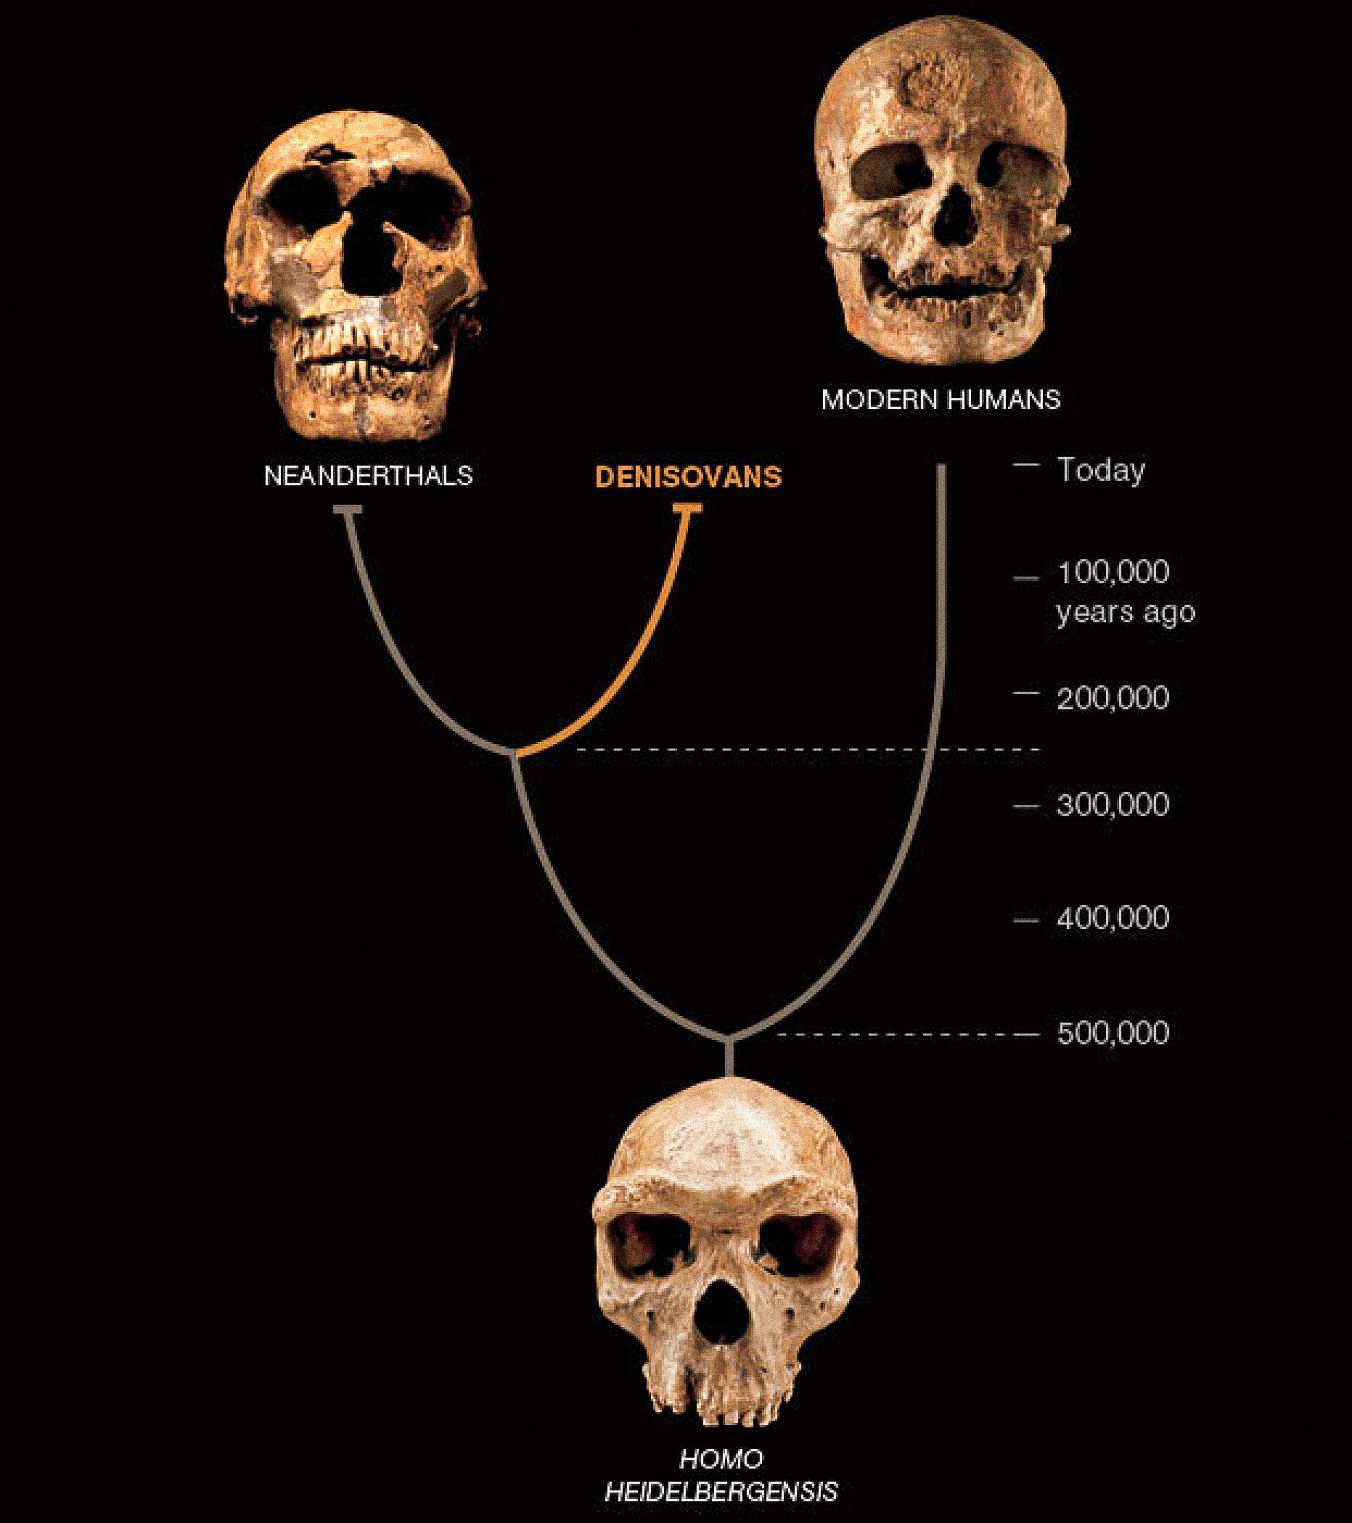 Úgy tűnik, hogy Ázsiában egy harmadik emberfajta, az úgynevezett Denisovans együtt élt a neandervölgyiekkel és a kora újkori emberekkel. Az utóbbi kettő bőséges kövületekről és leletekről ismert. A Denisovanokat eddig csak egy csontchipből és két fogból származó DNS határozza meg, de ez egy új fordulatot tár fel az emberi történetben.